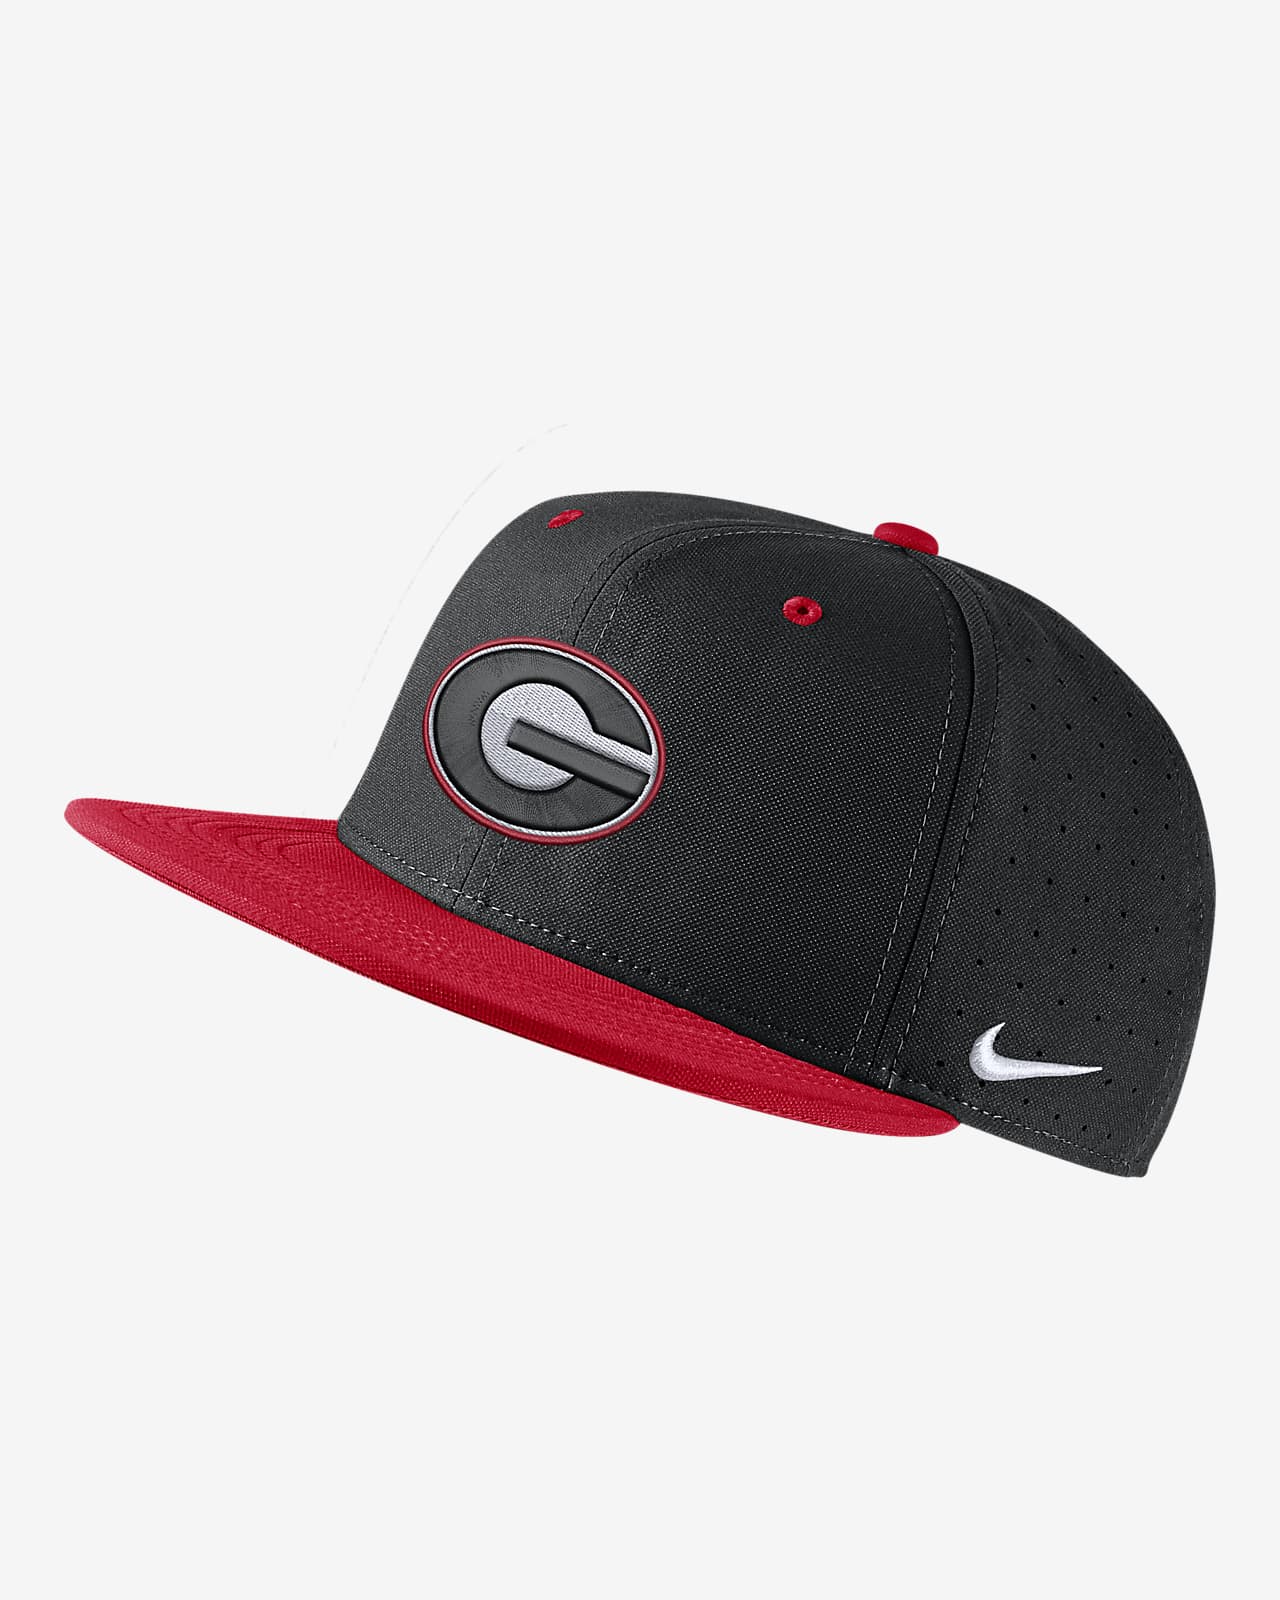 Georgia Nike College Fitted Baseball Hat